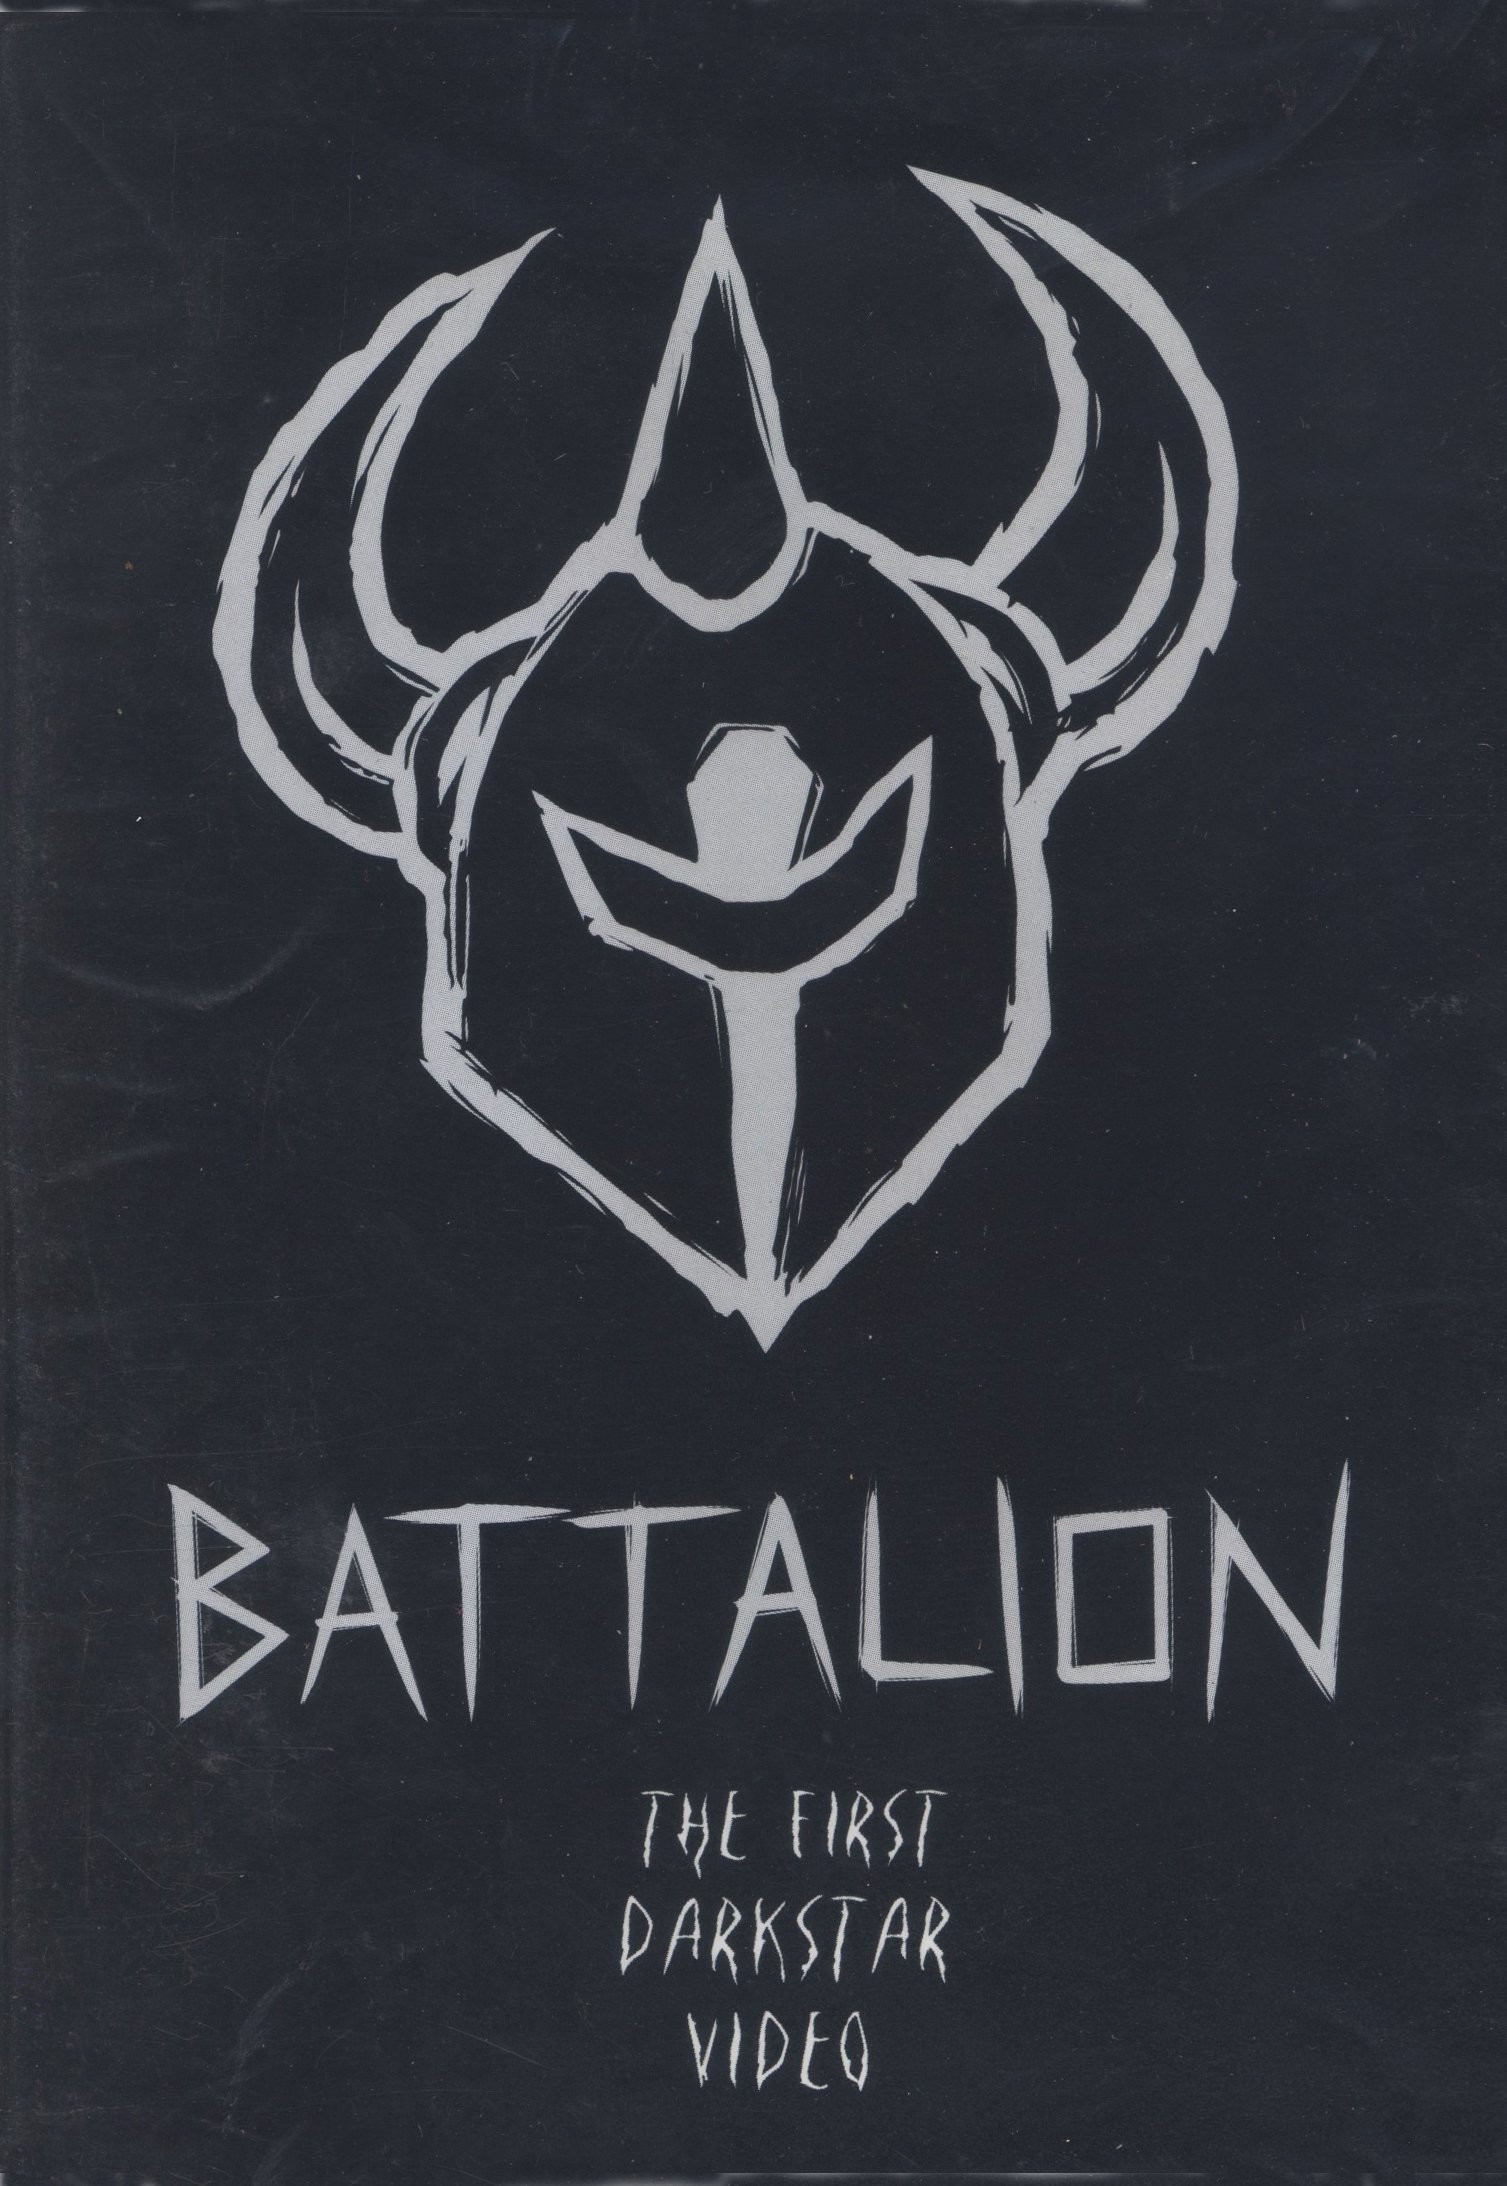 Battalion by Darkstar